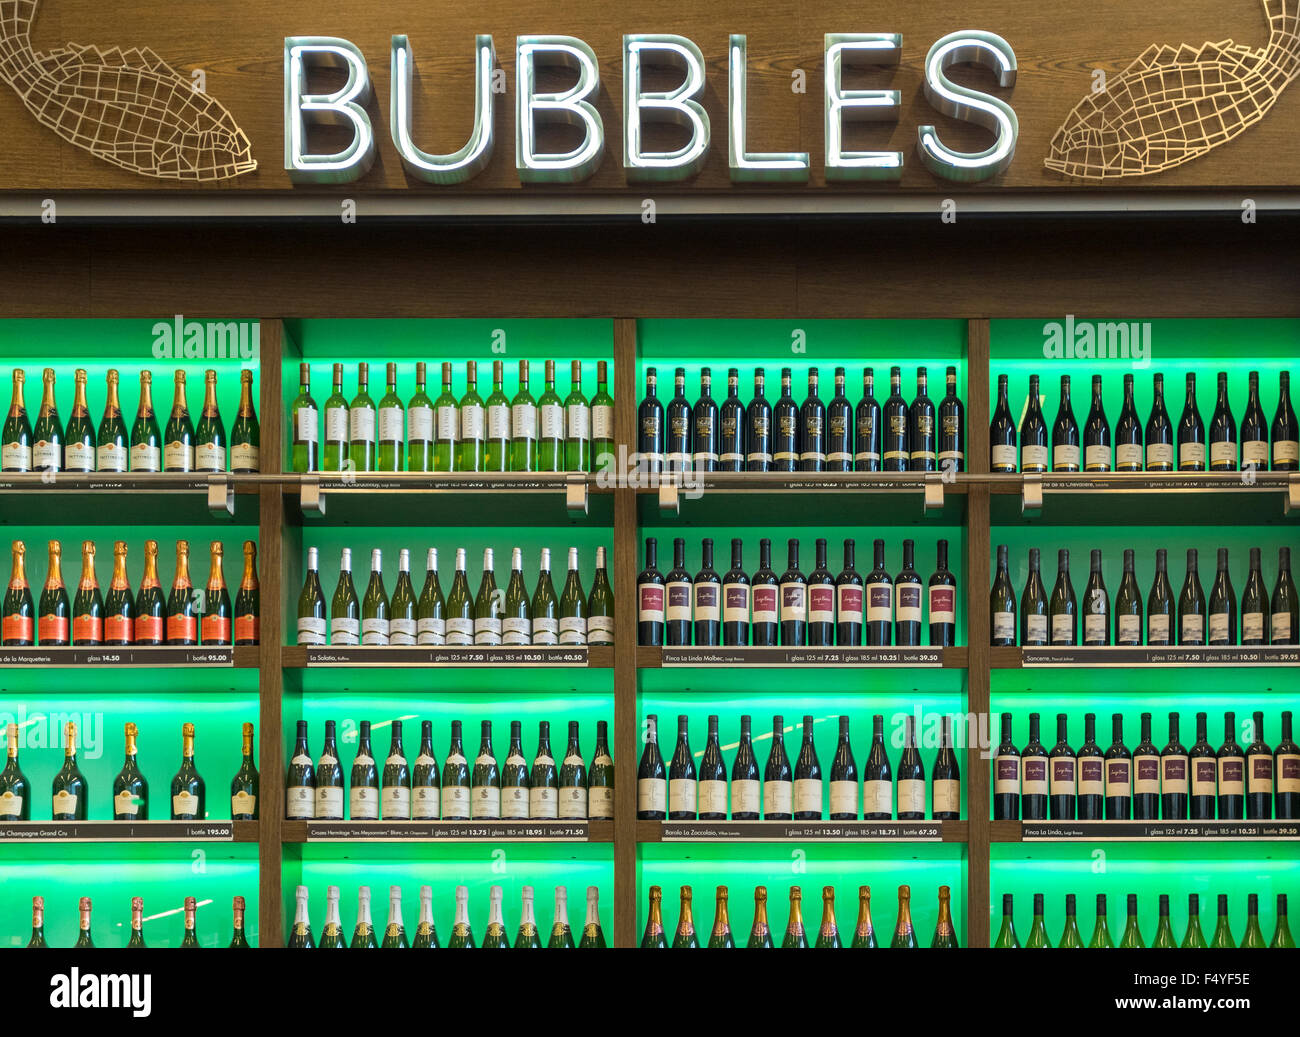 Burbujas de ostras y bar de vinos. Botellas de vino en la pantalla. El Aeropuerto Schiphol de Ámsterdam. Foto de stock